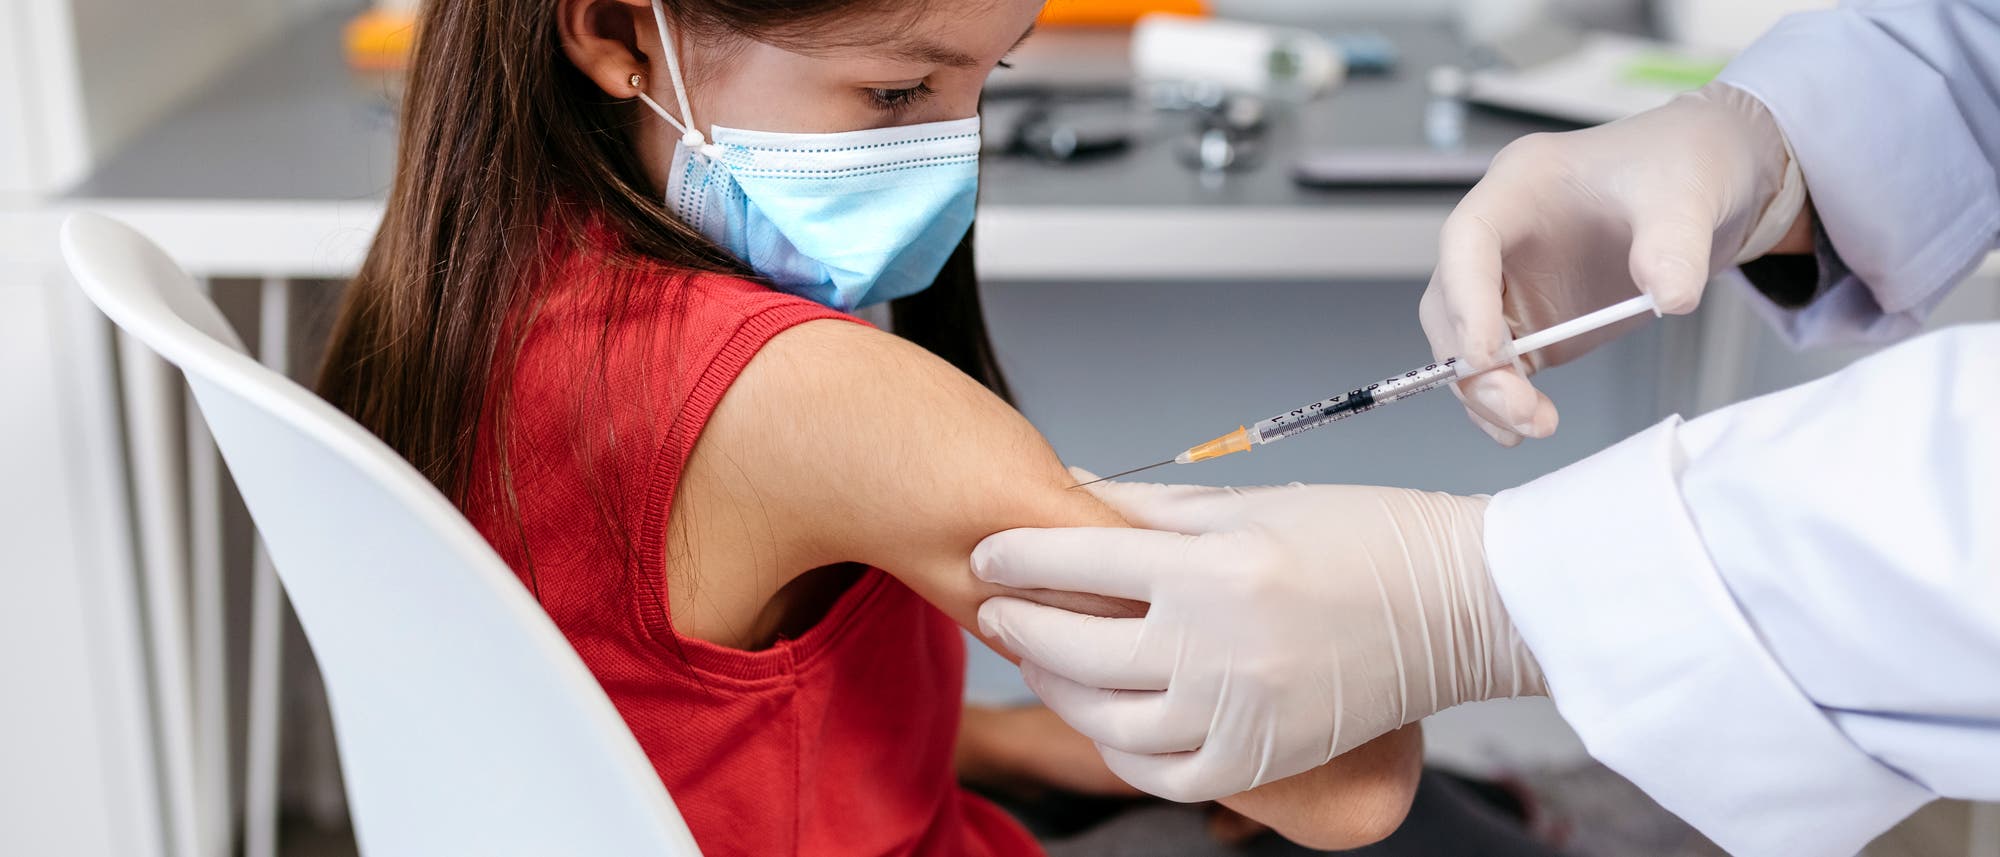 Ein Kind im roten Shirt bekommt eine Impfung in den Oberarm.